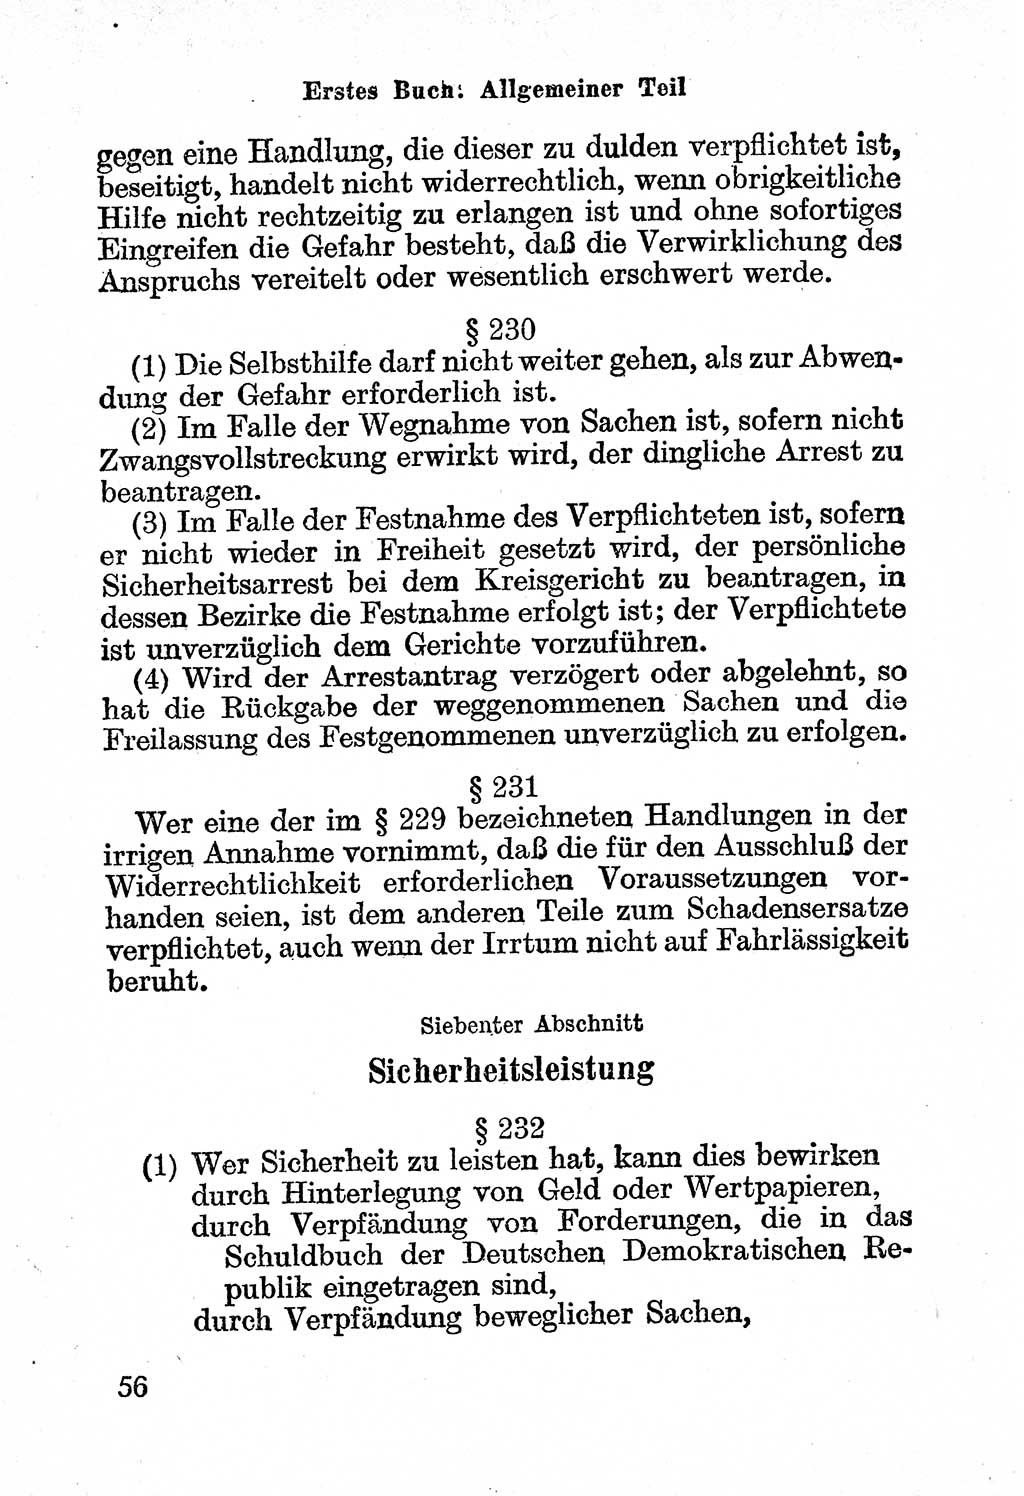 Bürgerliches Gesetzbuch (BGB) nebst wichtigen Nebengesetzen [Deutsche Demokratische Republik (DDR)] 1956, Seite 56 (BGB Nebenges. DDR 1956, S. 56)